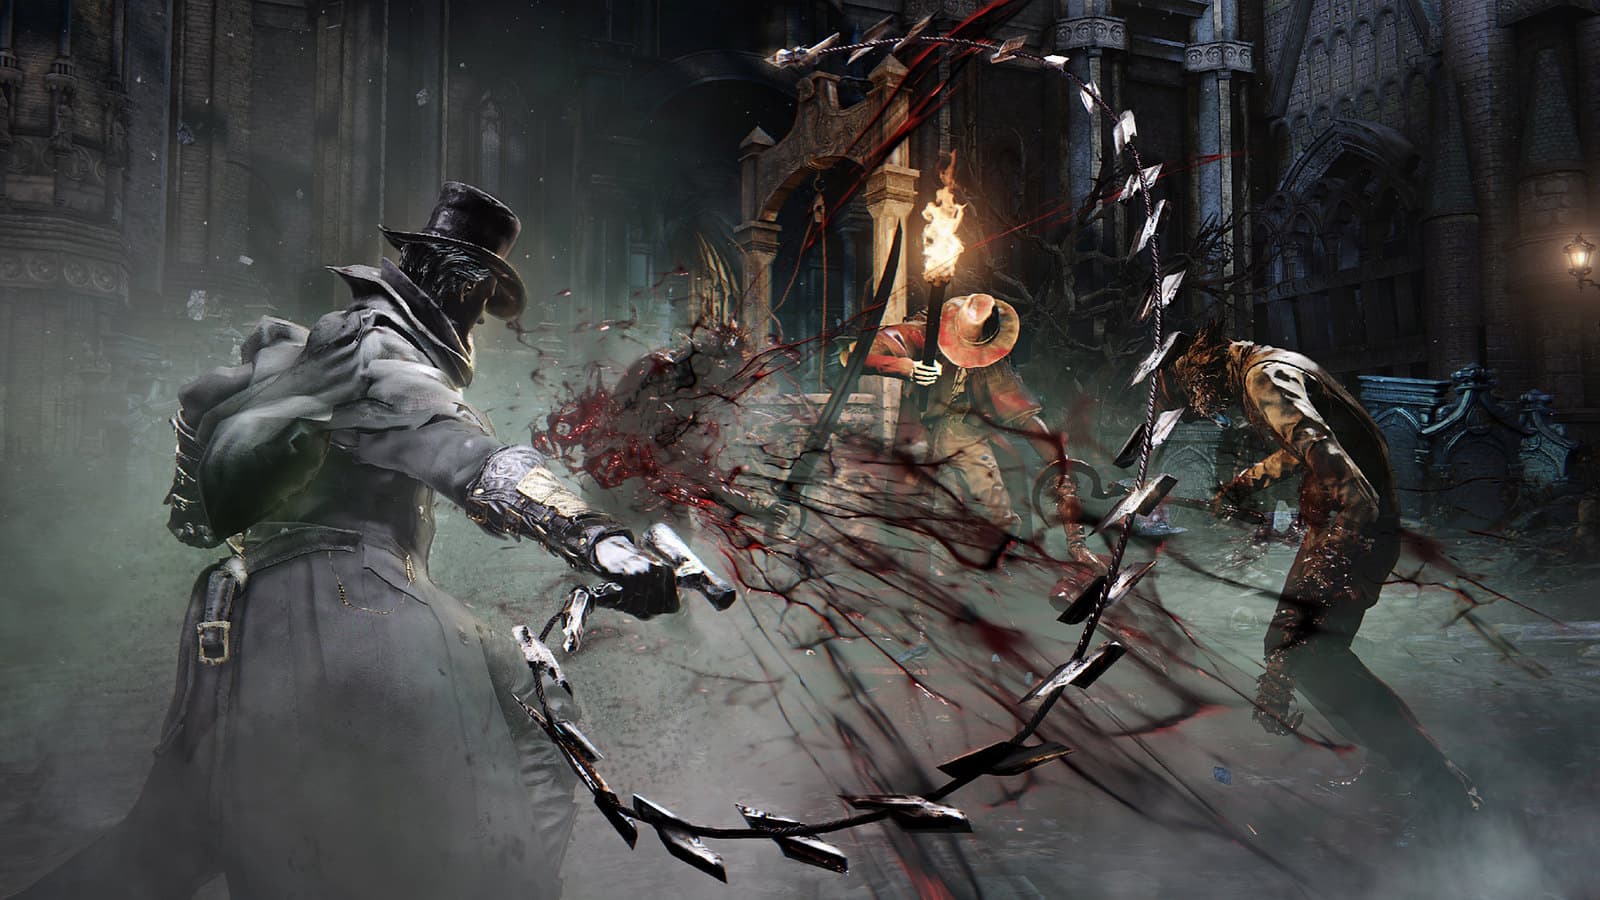 Bloodborne deve chegar ao PC e ganhar remaster e sequência, revela insider